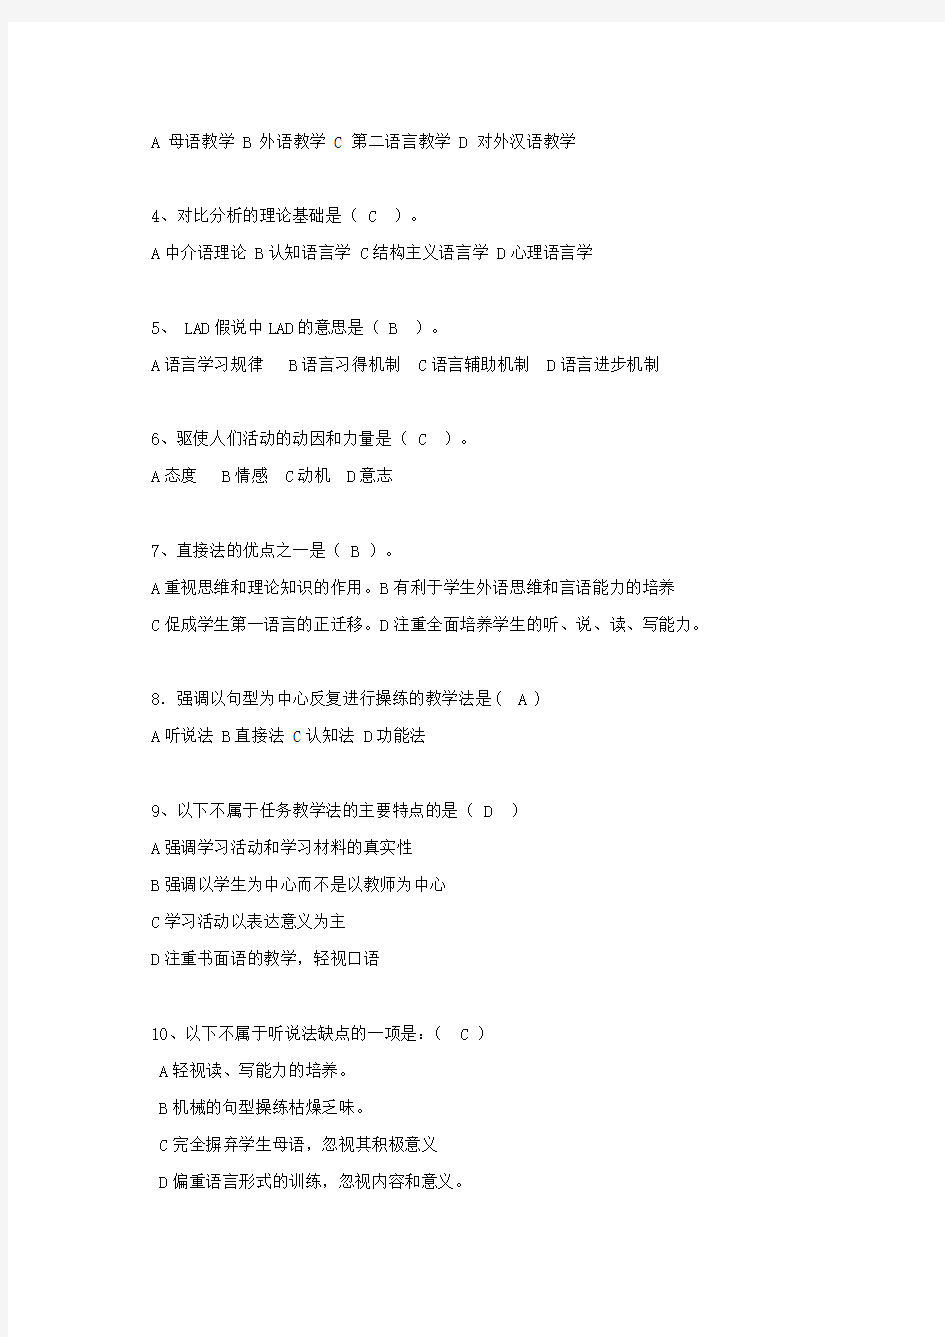 考试参考资料-2014年4月对外汉语教学理论考试模拟题(IPA国际注册汉语教师资格证考试)